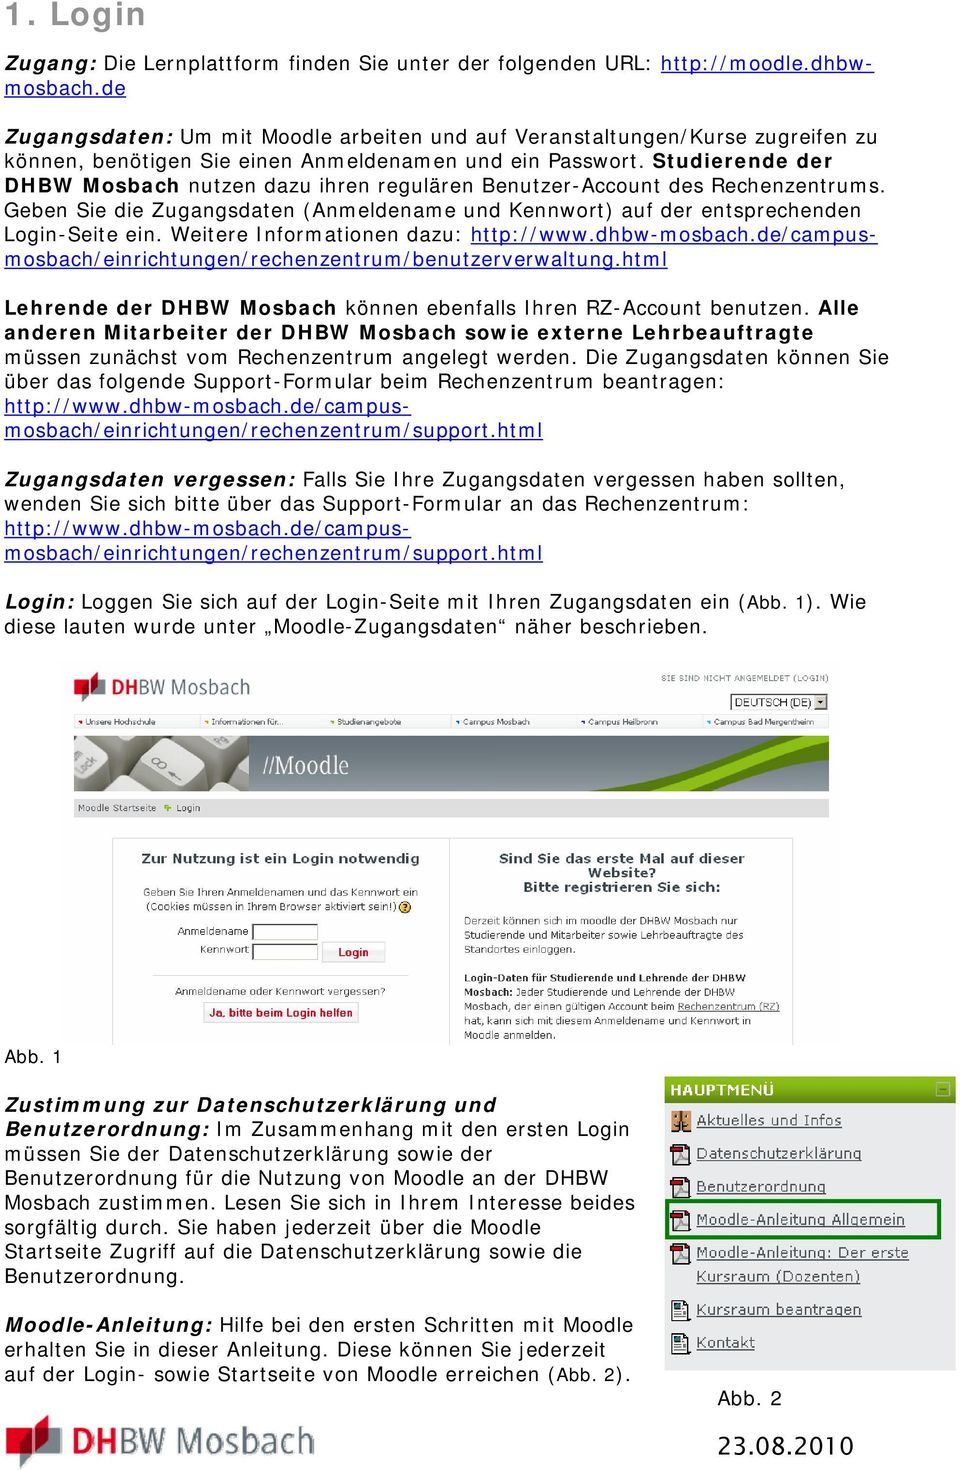 Studierende der DHBW Mosbach nutzen dazu ihren regulären Benutzer-Account des Rechenzentrums. Geben Sie die Zugangsdaten (Anmeldename und Kennwort) auf der entsprechenden Login-Seite ein.